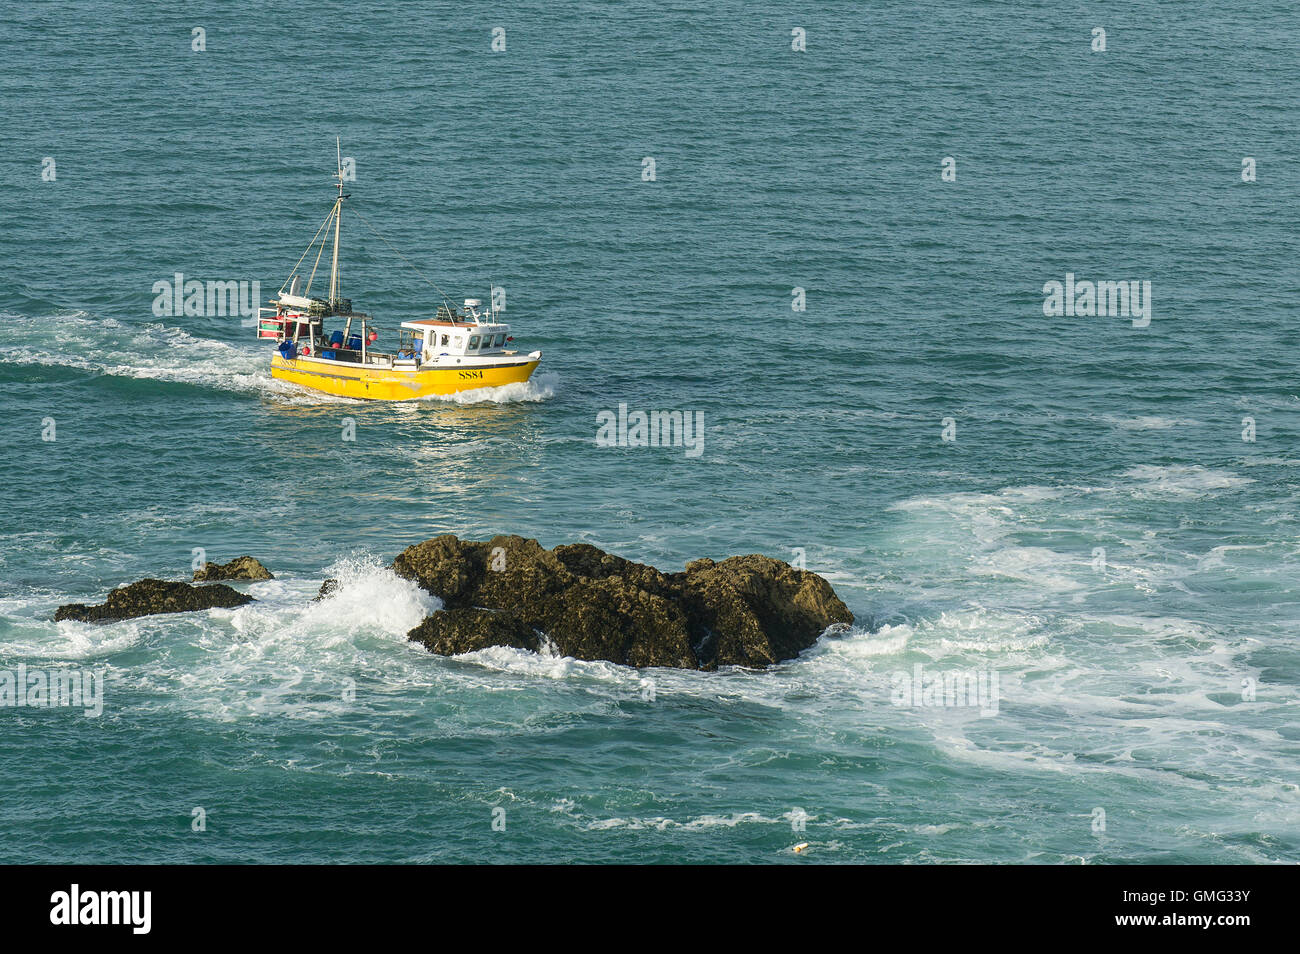 El barco pesquero SS84 Tres Jays vaporiza pasado rocas expuestas en su camino de regreso a puerto. Foto de stock